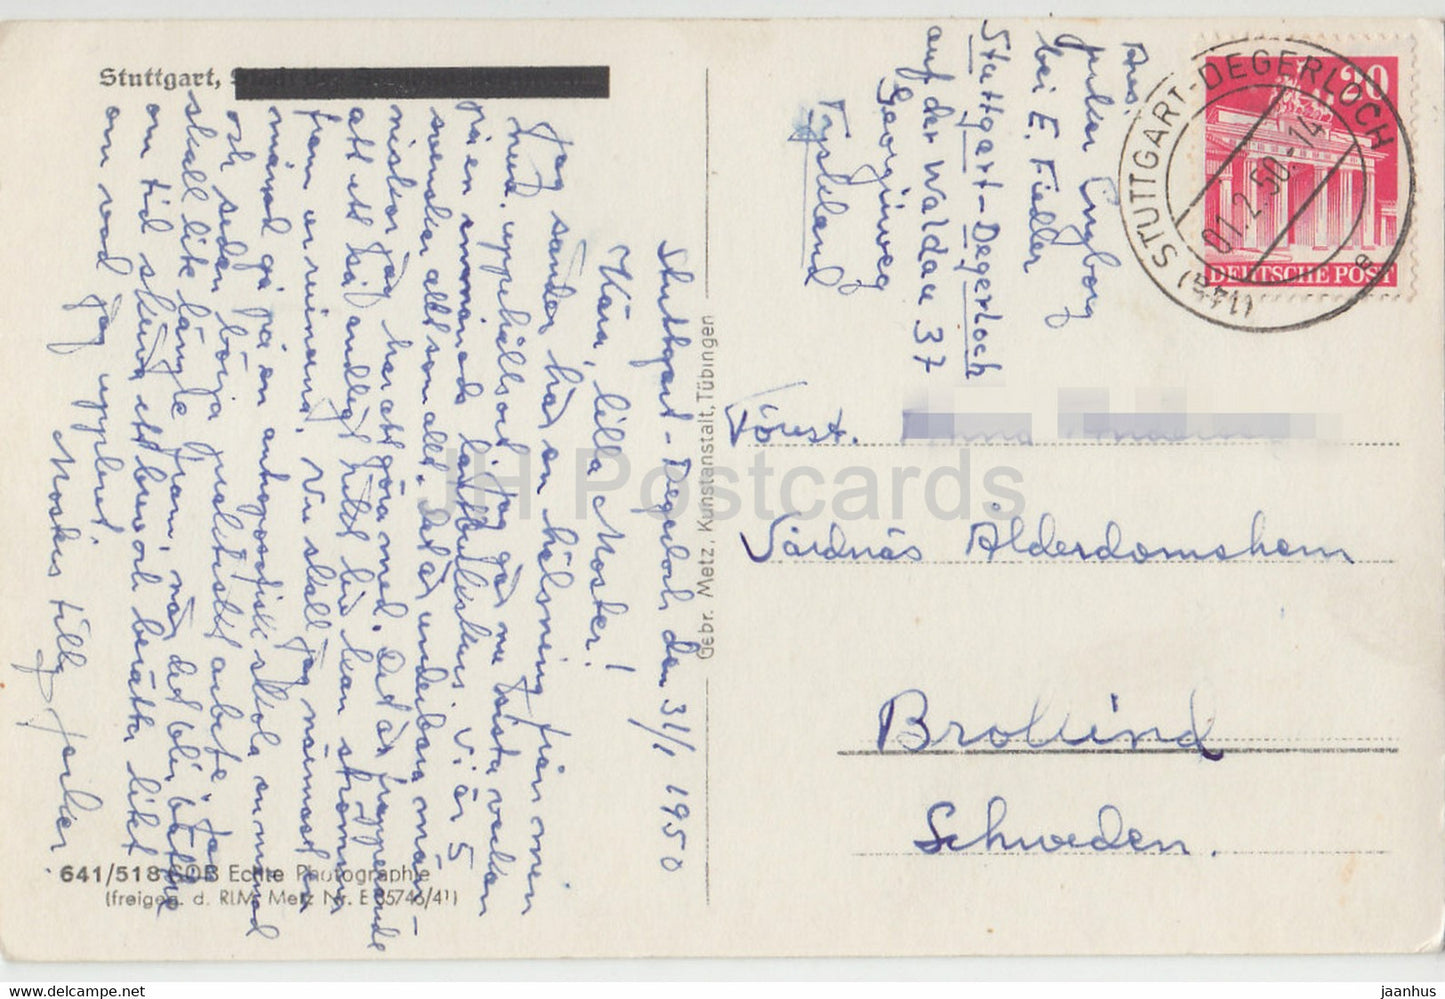 Stuttgart - alte Postkarte - 1950 - Deutschland - gebraucht